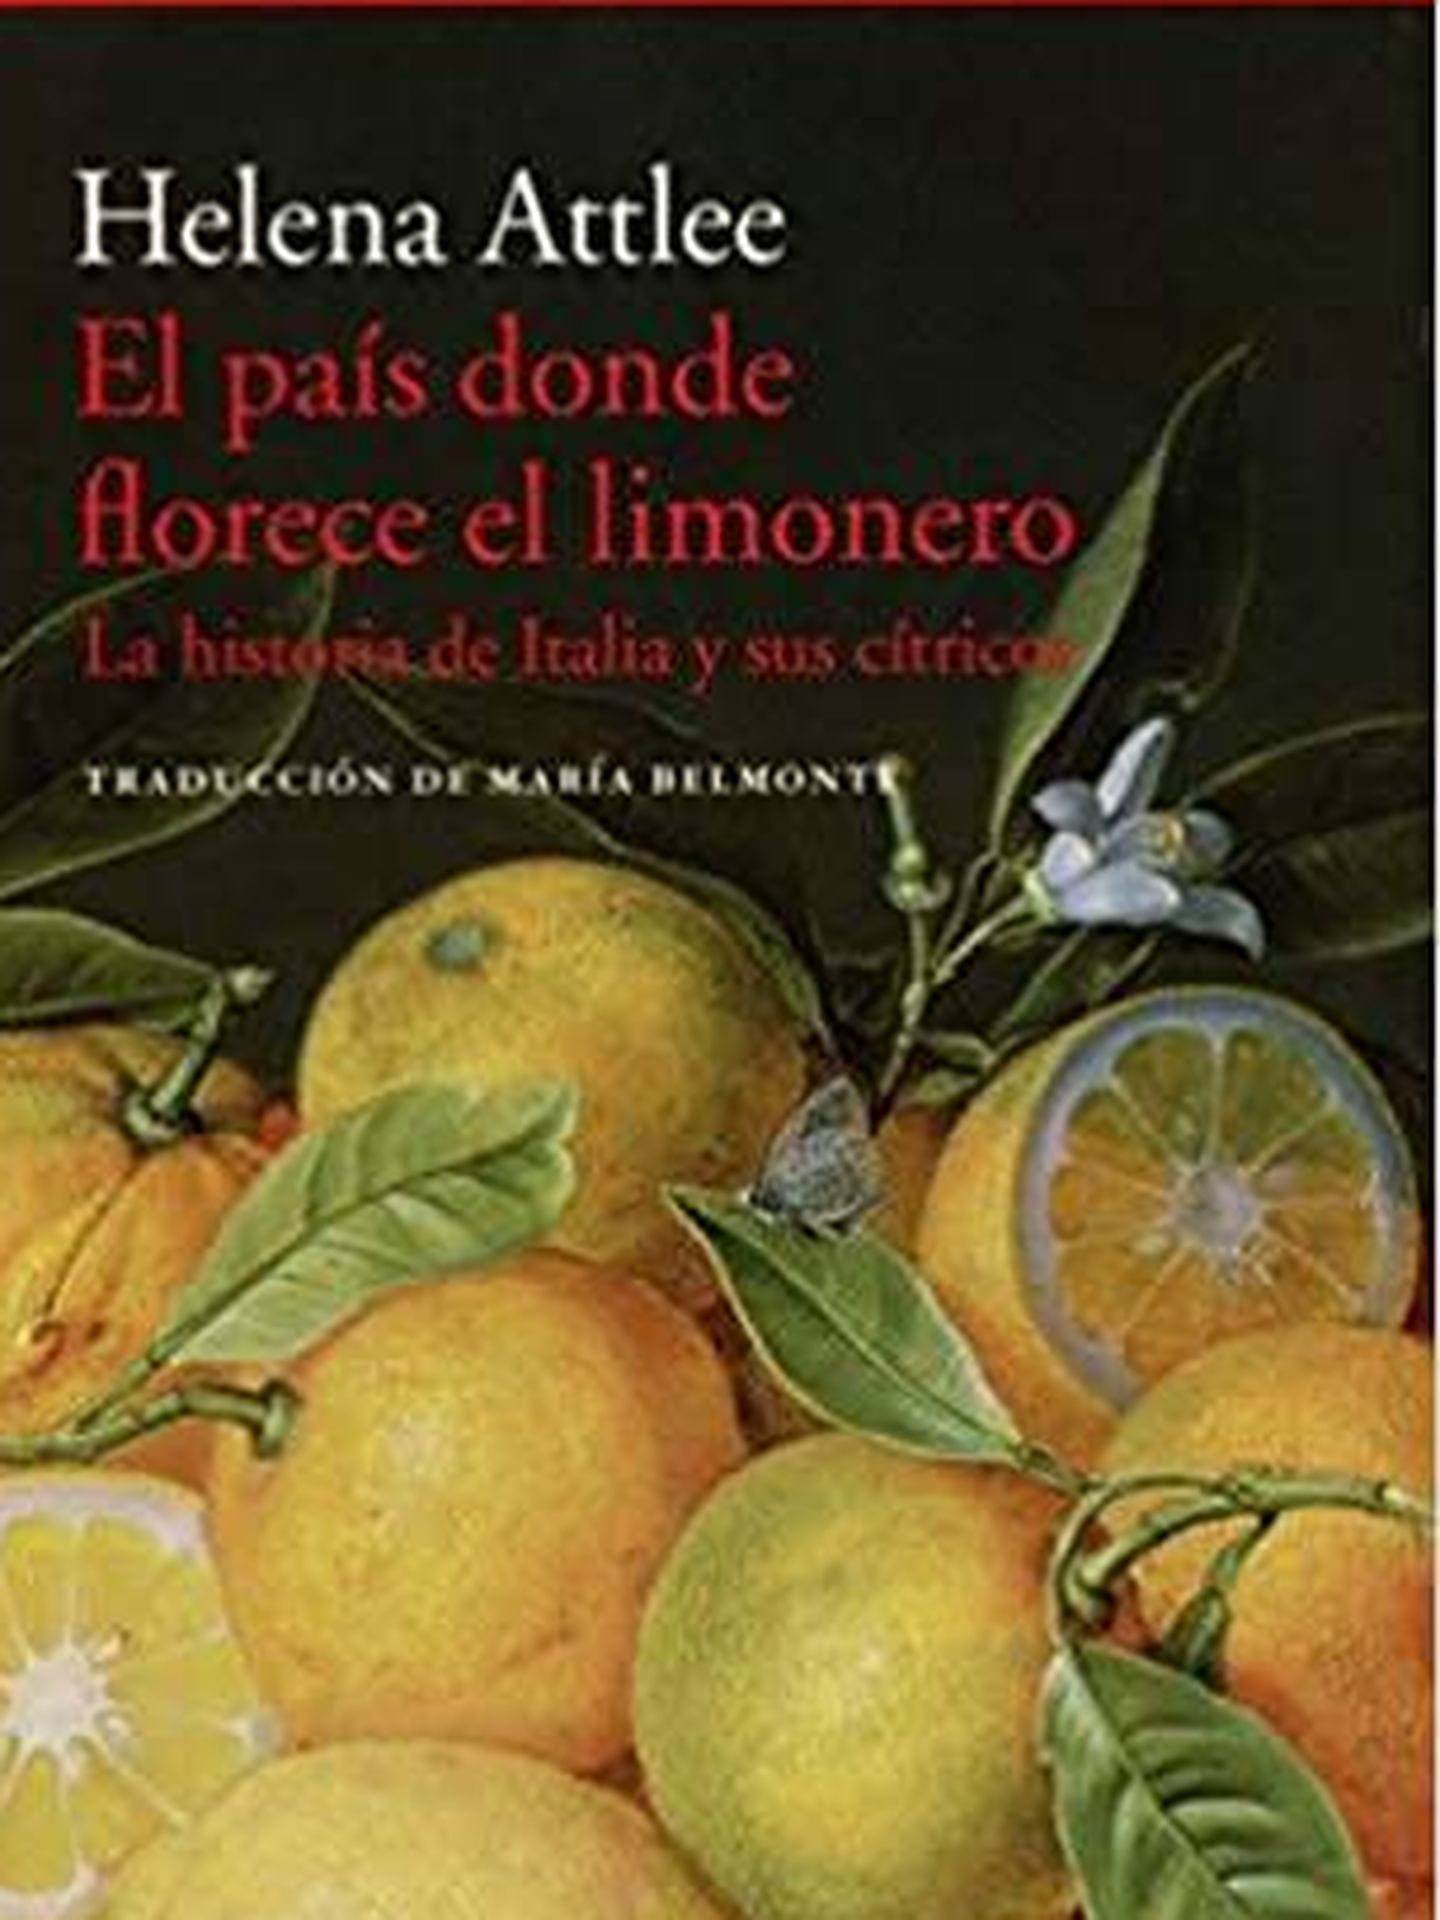 'El país donde florece el limonero'.